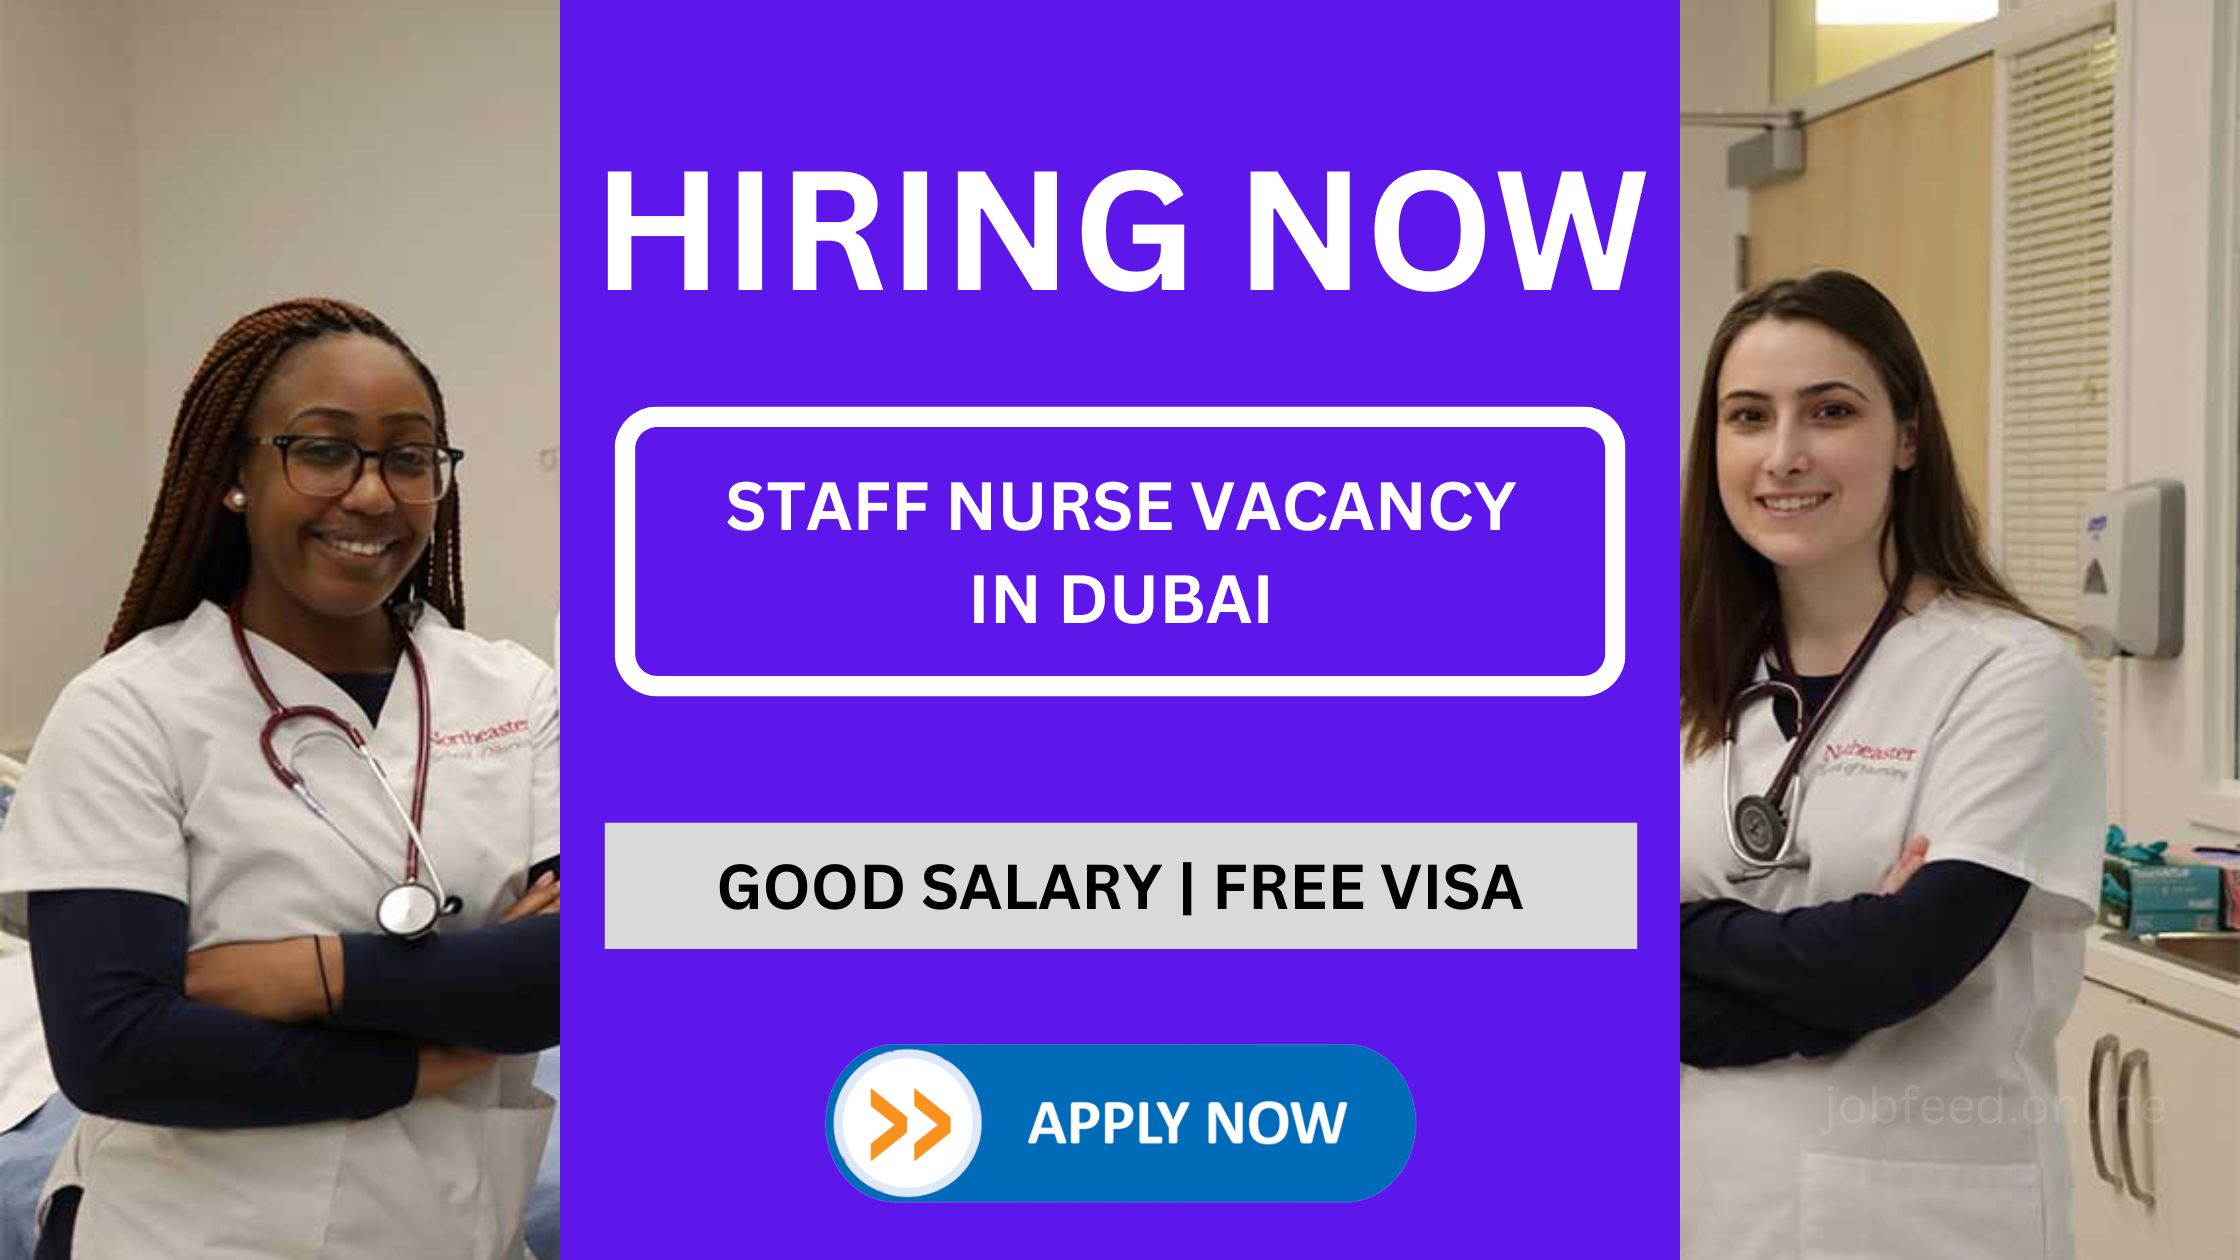 وظيفة ممرضة شاغرة في دبي